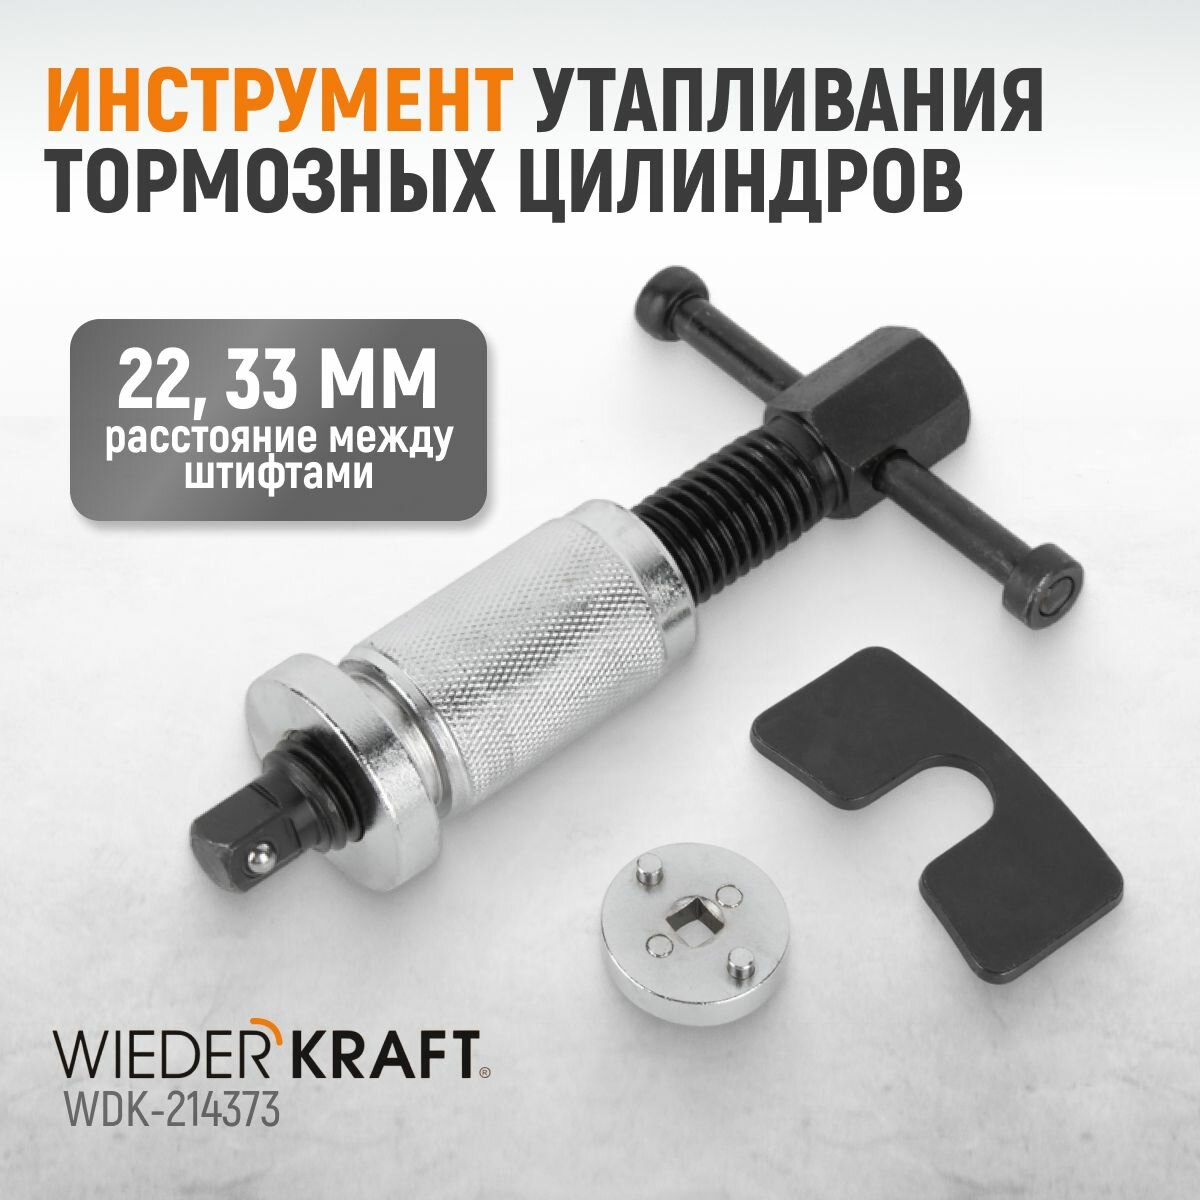 Инструмент утапливания тормозных цилиндров WDK-214373